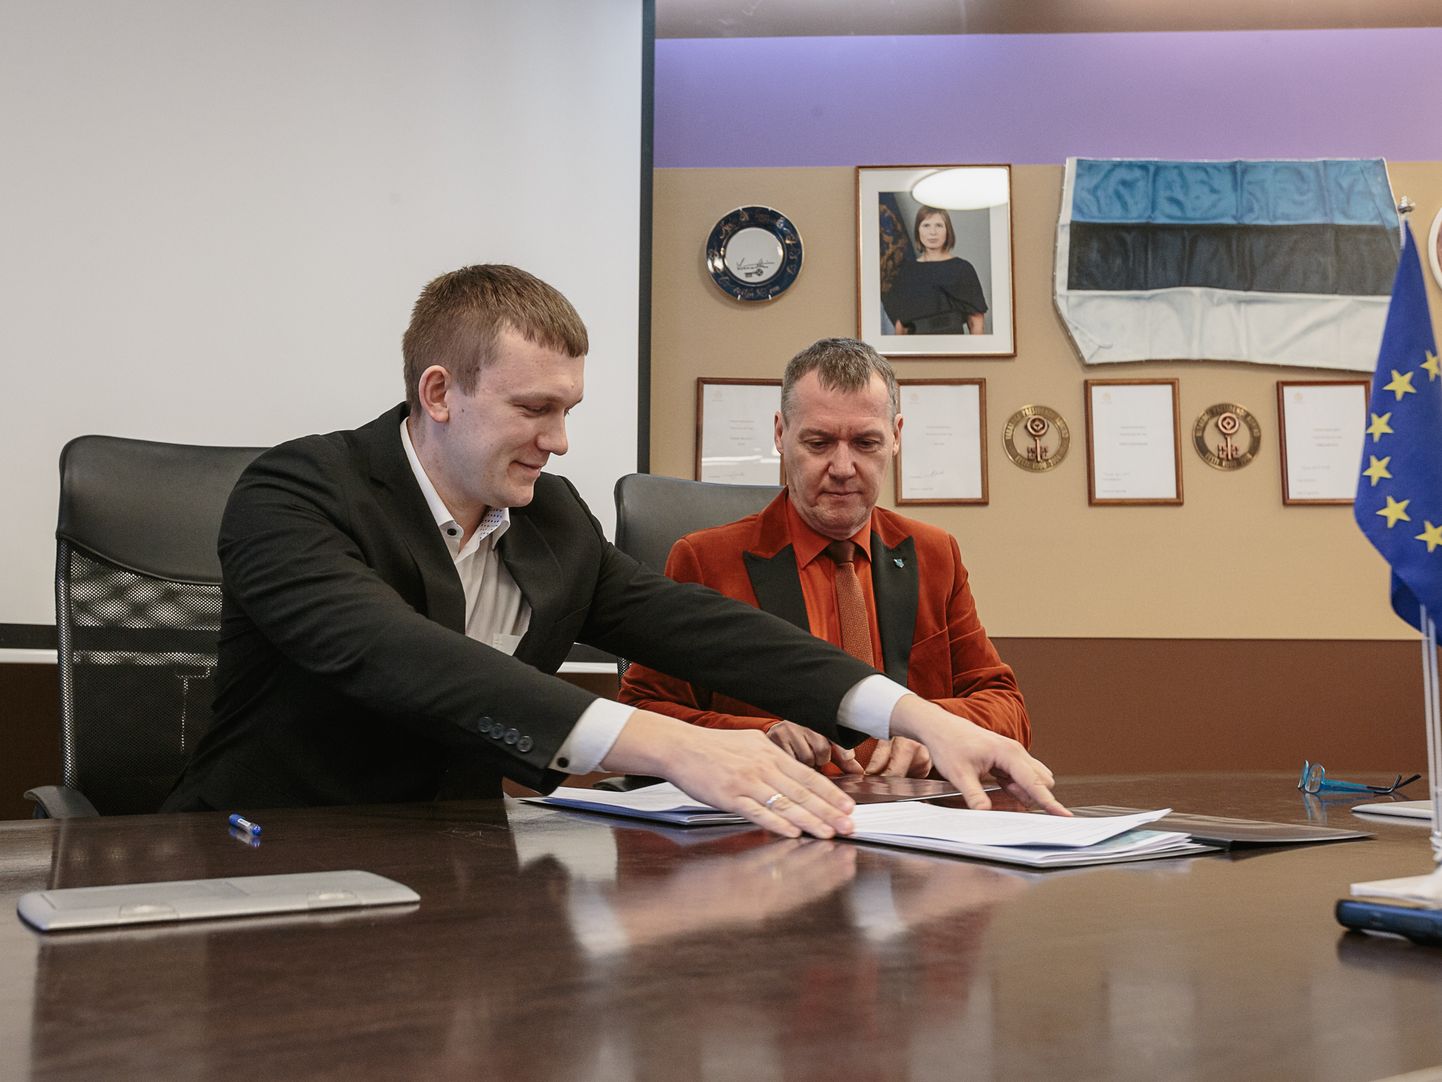 Tänavu märtsis allkirjastasid Narva-Jõesuu linnapea Maksim Iljin (vasakul) ja tema Narva kolleeg Tarmo Tammiste koostööleppe. Praktikas näeb see koostöö välja nõnda: ise seda soovimata, valmistas suur piirilinn väikese kuurortlinna jaoks ette vähemalt neli kvalifitseeritud ametnikku, jäädes neist ise ilma. ILJA SMIRNOV